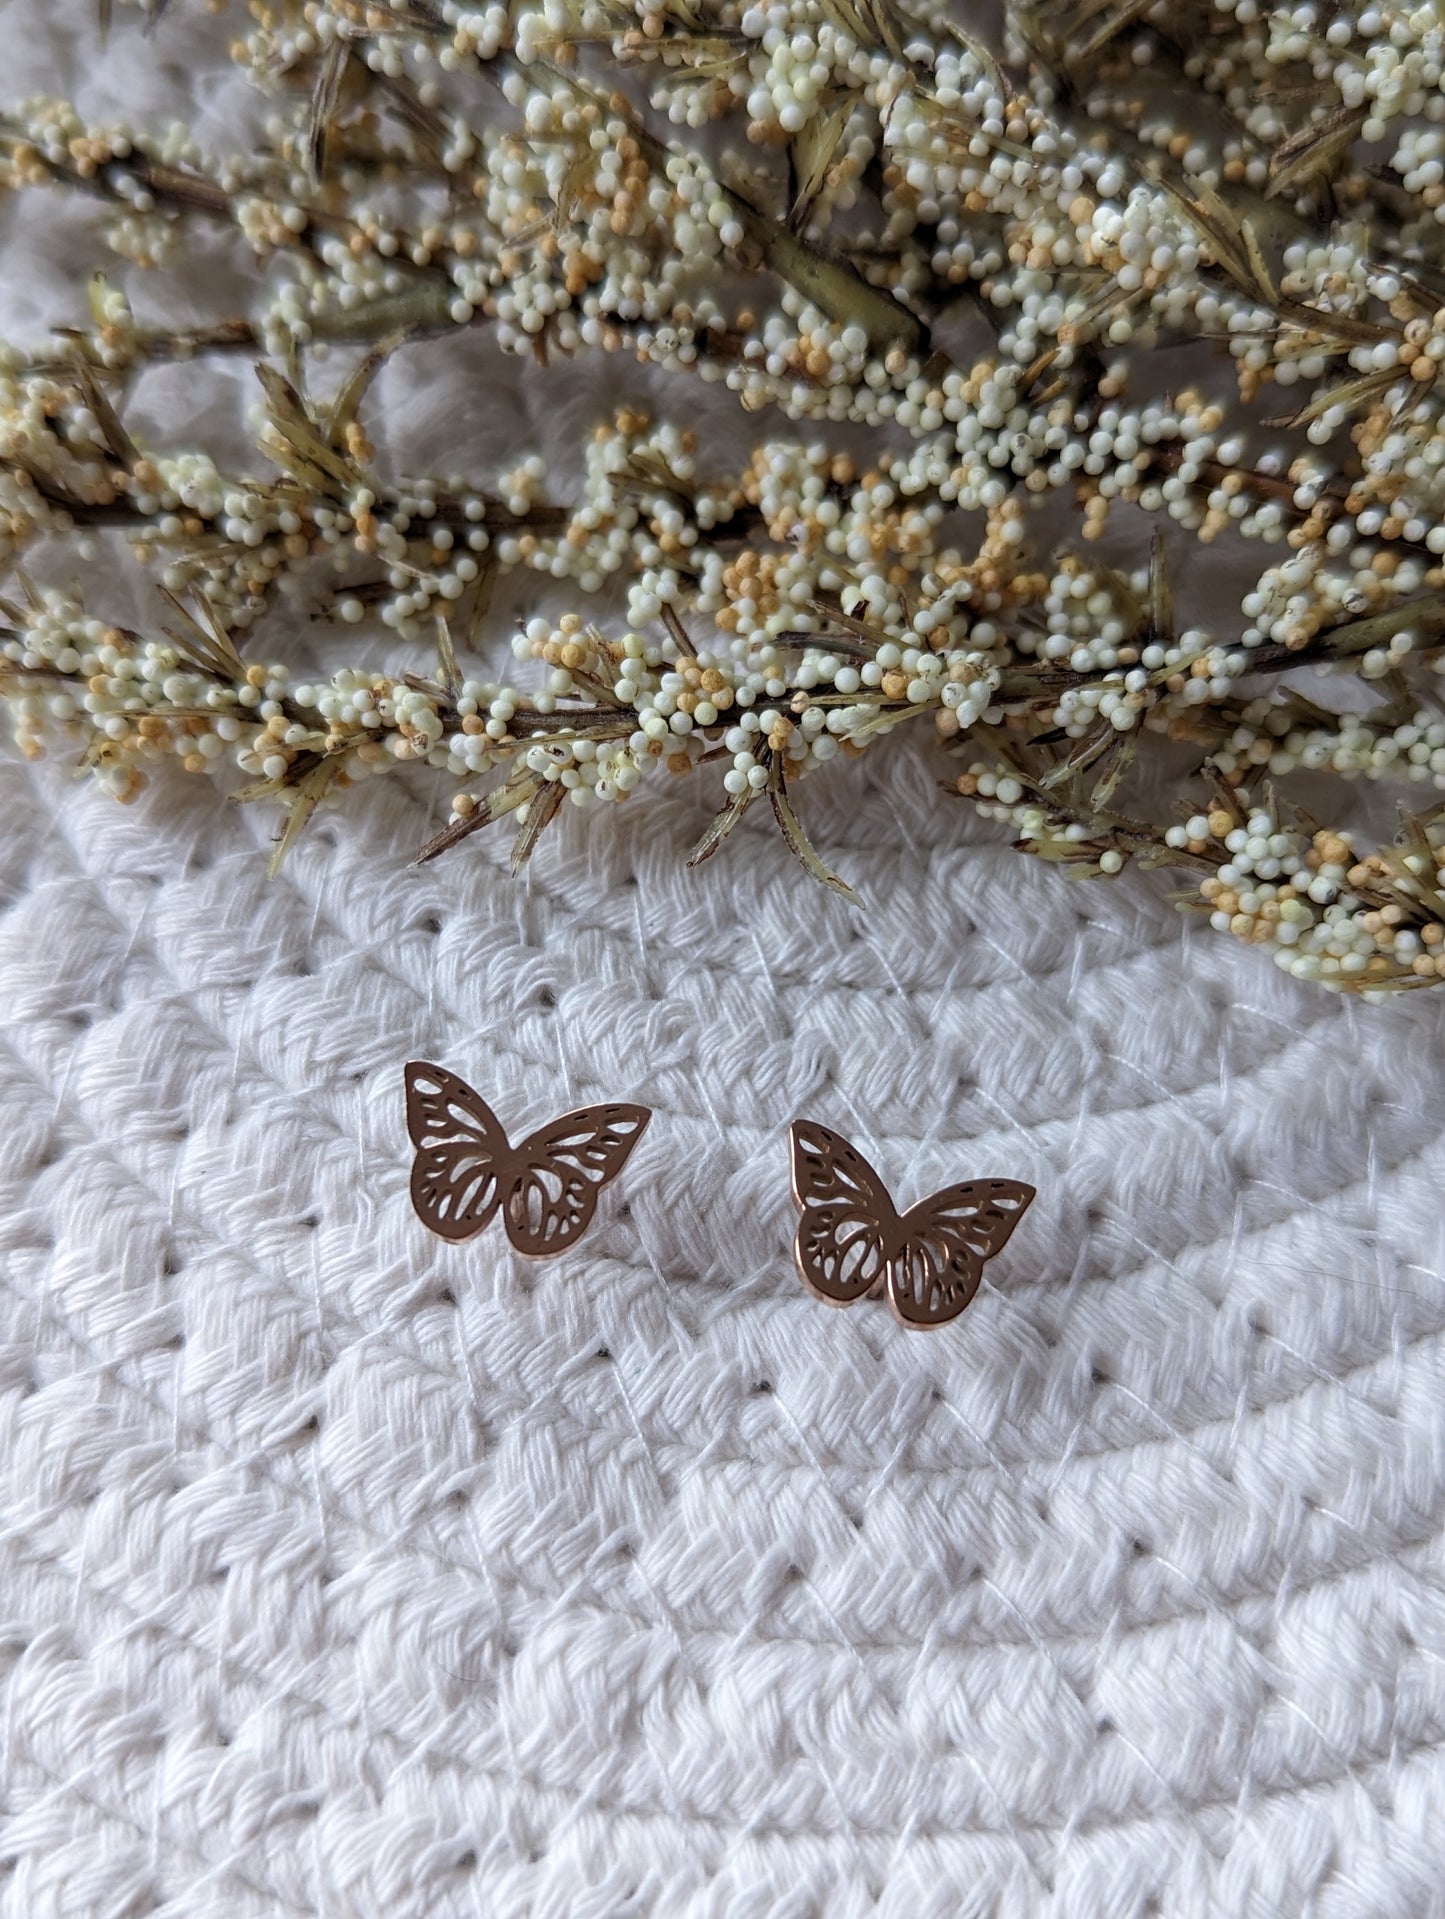 Boucles d'oreilles papillon // butterfly stud earrings // stainless steel earrings // minimalist jewelry // (bo-1828)